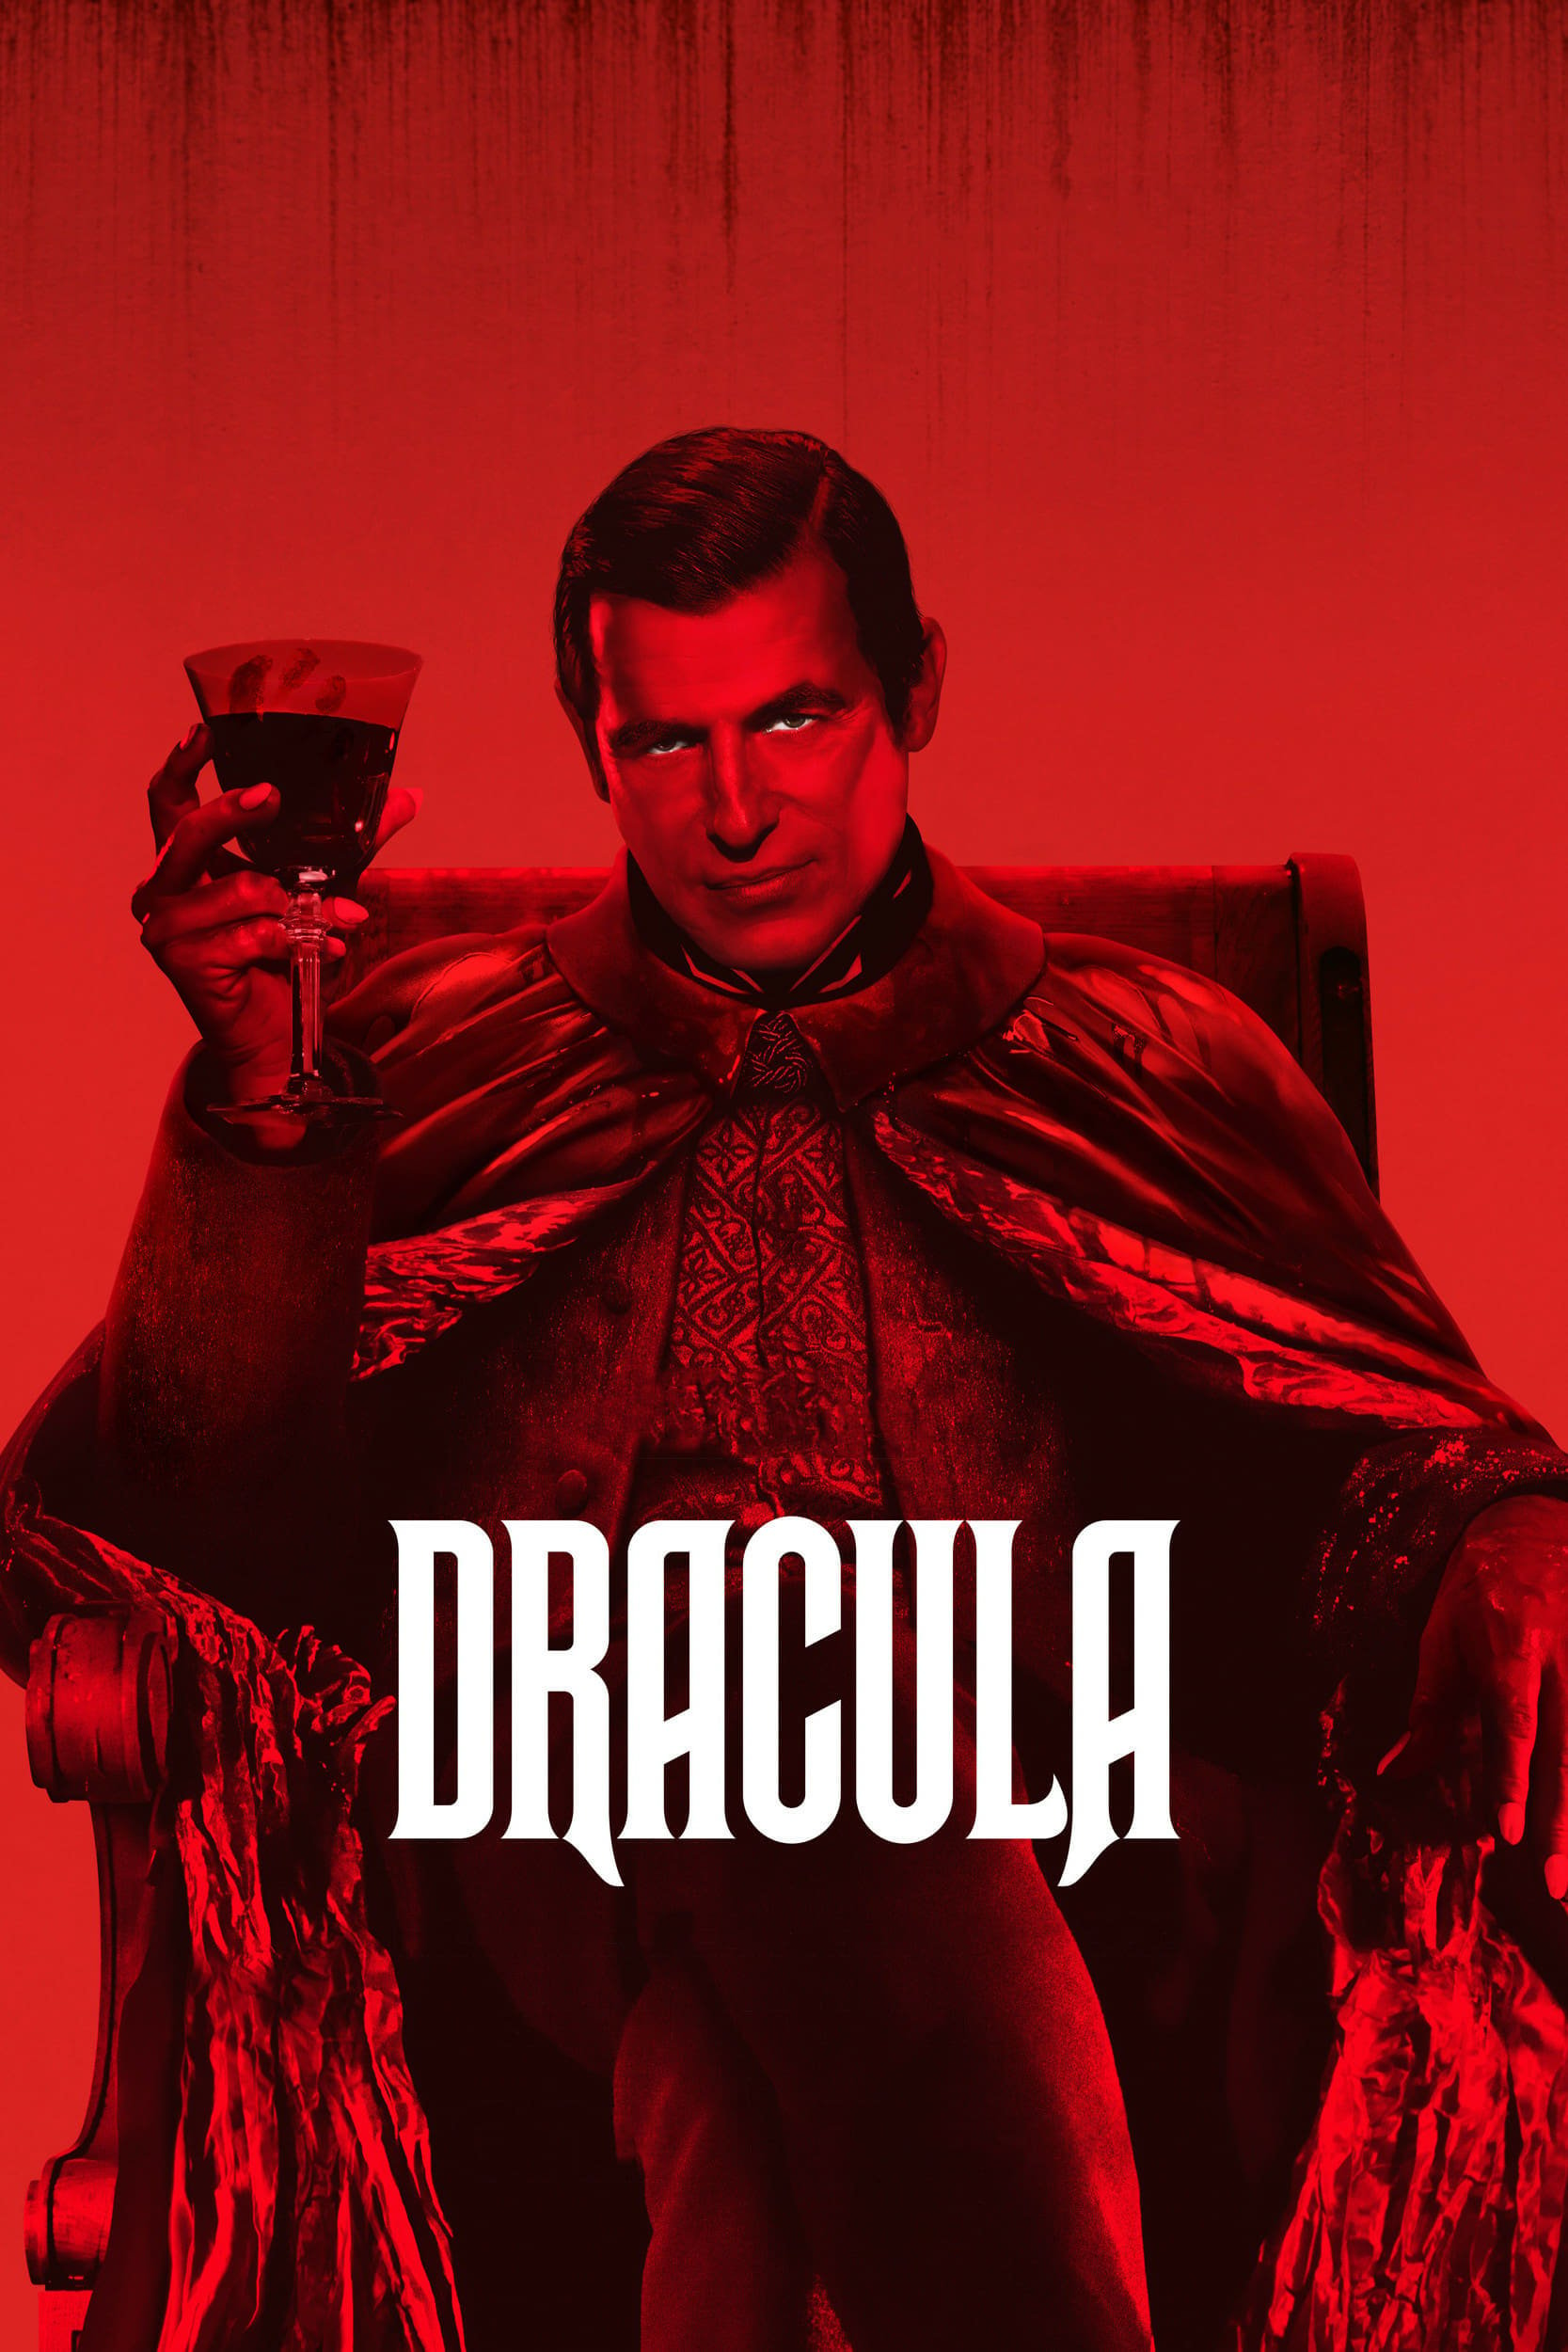 Plakát pro film “Dracula”